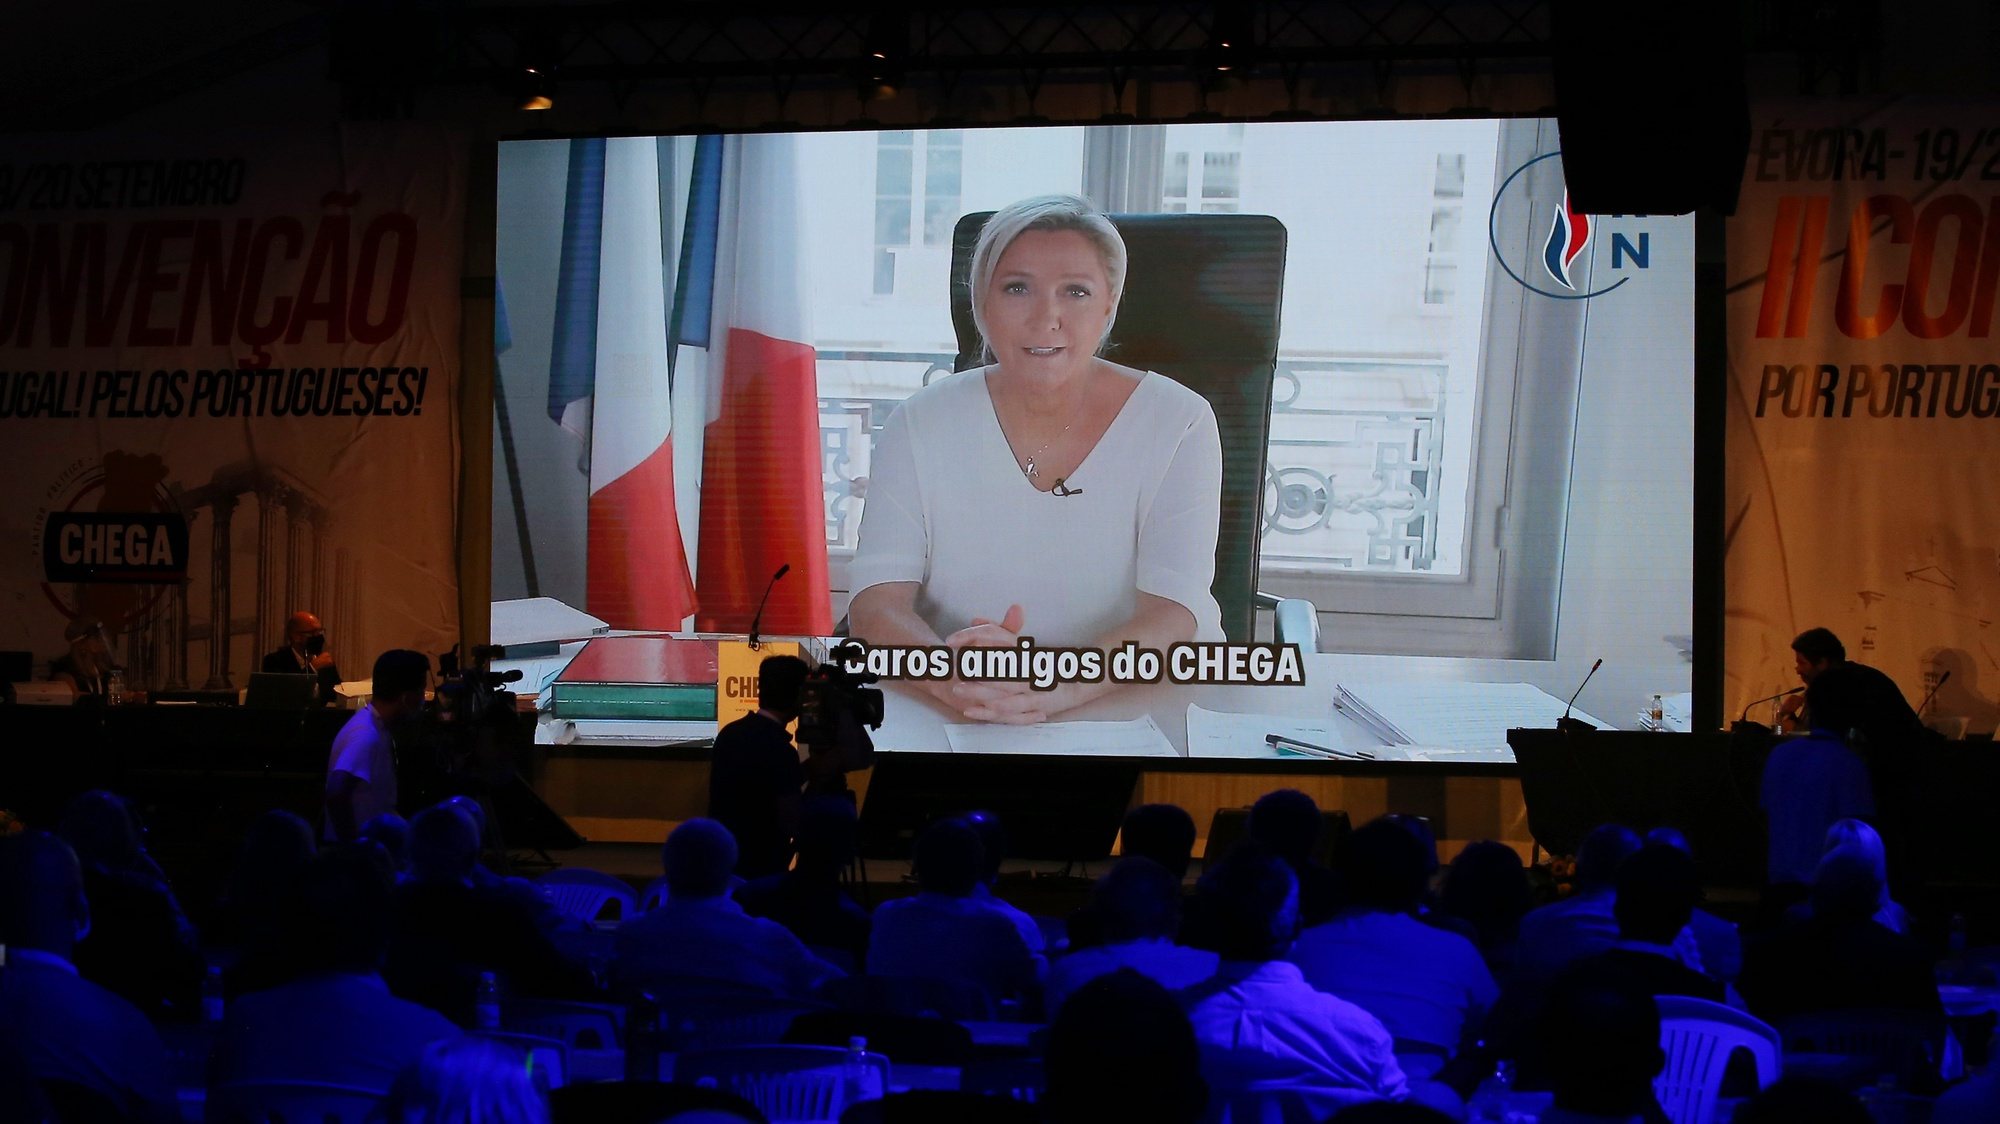 O presidente do Chega, André Ventura (D), assiste a um vídeo com uma intervenção da presidente da Rassemblement National, partido de extrema-direita francês, Marine Le Pen. Decorre hoje a II Convenção Nacional do Chega, em Évora, 20 de setembro de 2020. NUNO VEIGA/LUSA